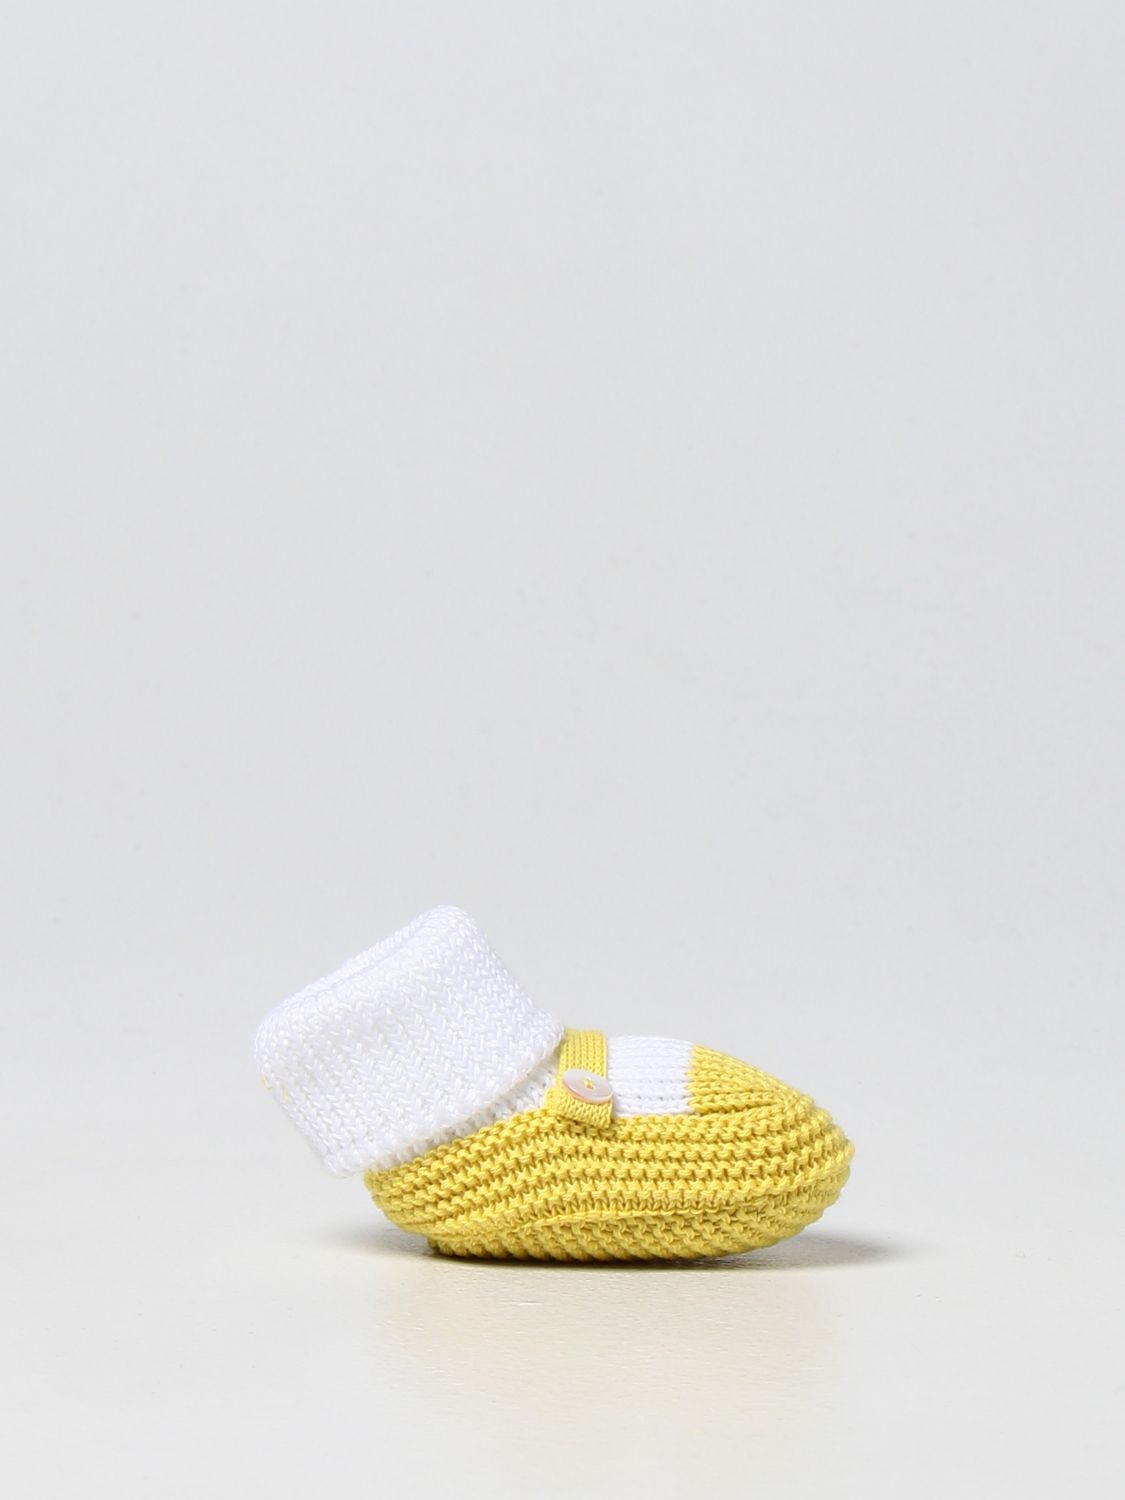 LITTLE BEAR: Zapatos para bebé, Amarillo | Little Bear 4136 en línea en GIGLIO.COM